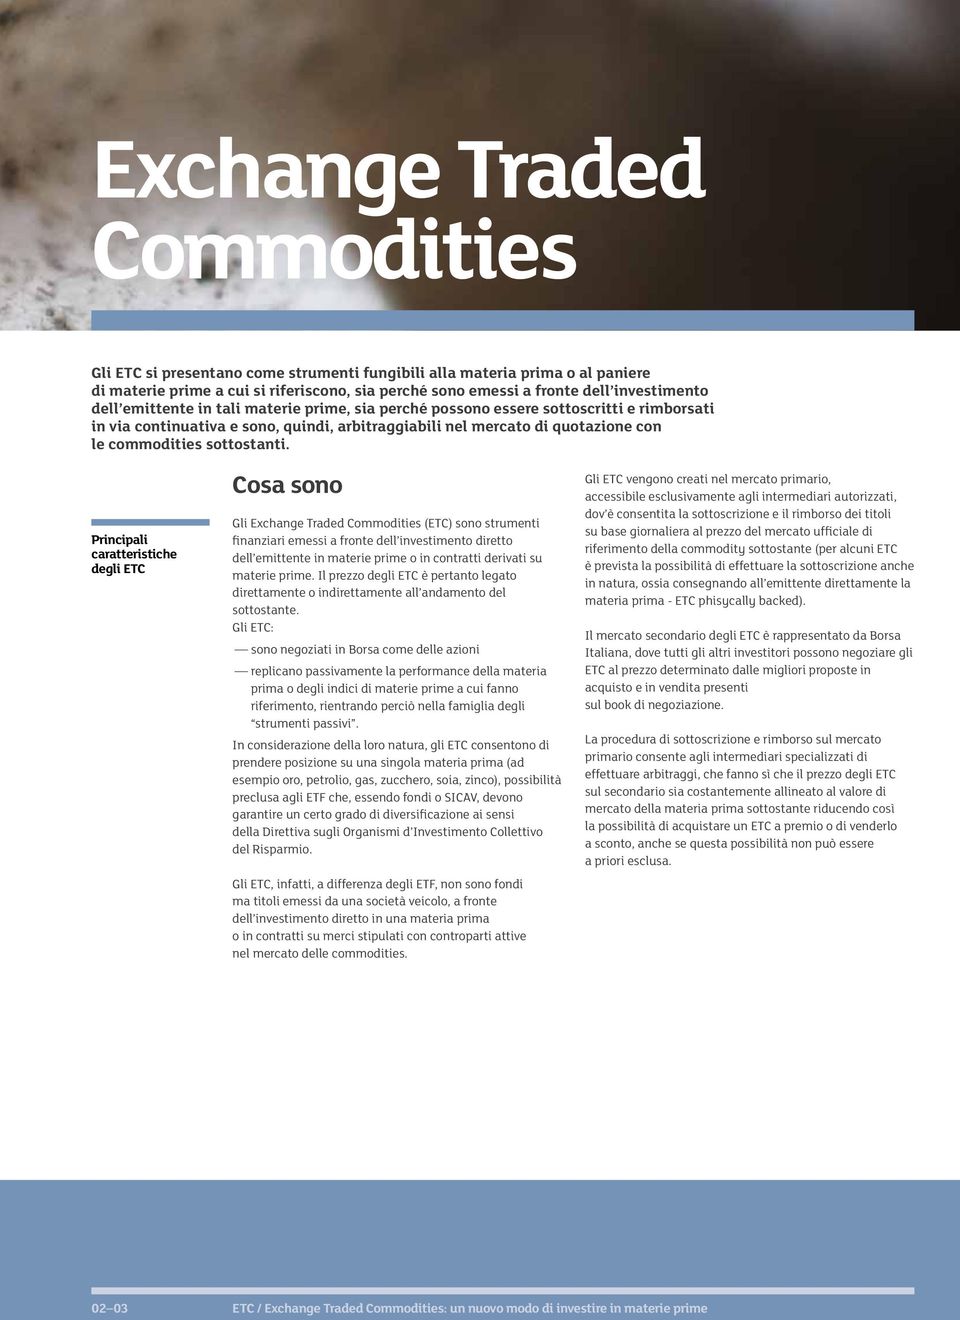 Principali caratteristiche degli ETC Cosa sono Gli Exchange Traded Commodities (ETC) sono strumenti finanziari emessi a fronte dell investimento diretto dell emittente in materie prime o in contratti